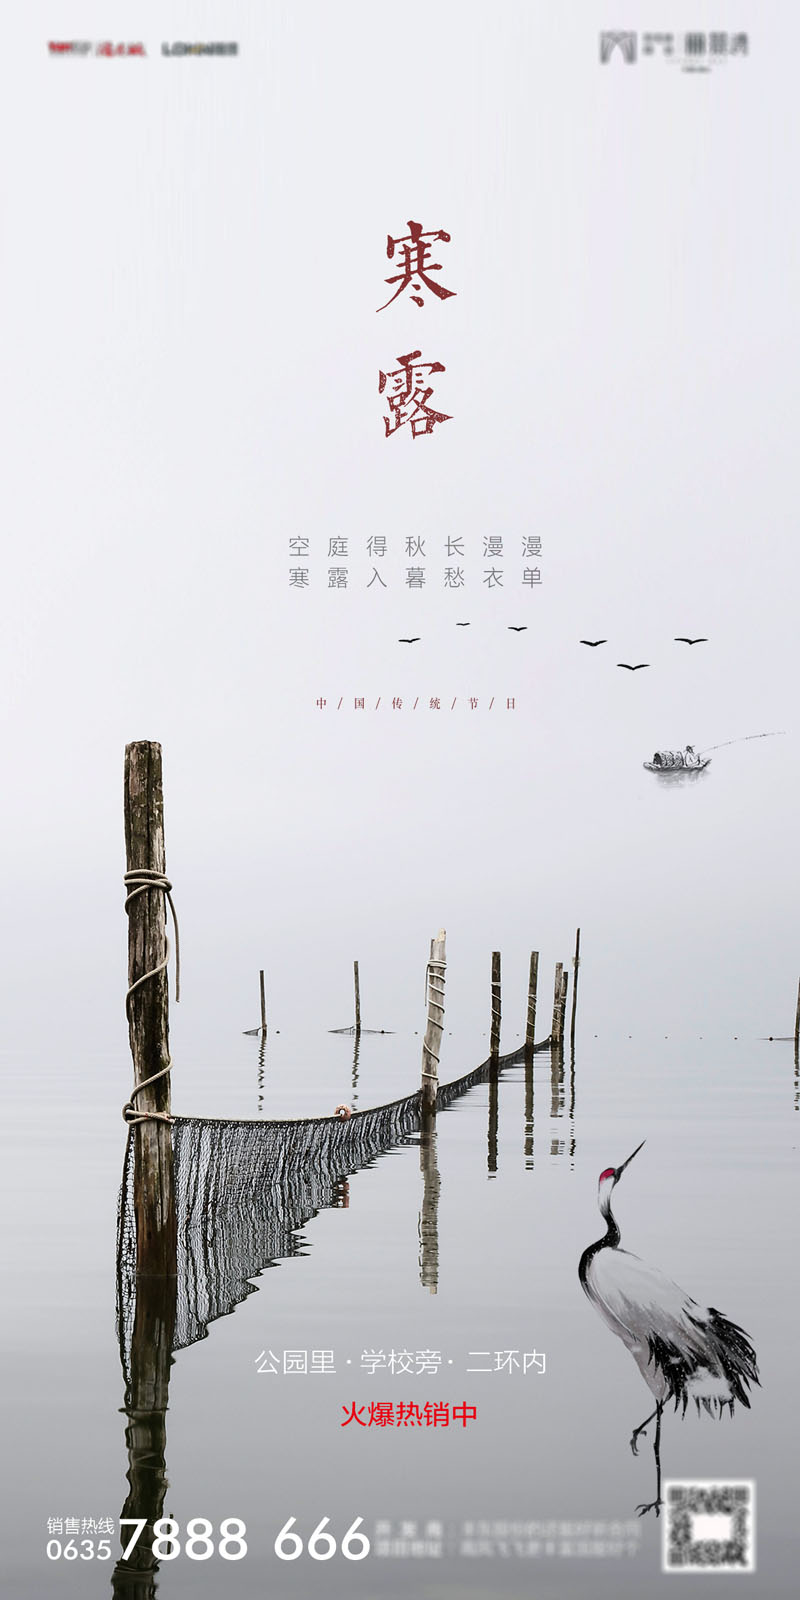 94款中国传统二十四节气之寒露节日海报PSD模板 设计素材 第5张